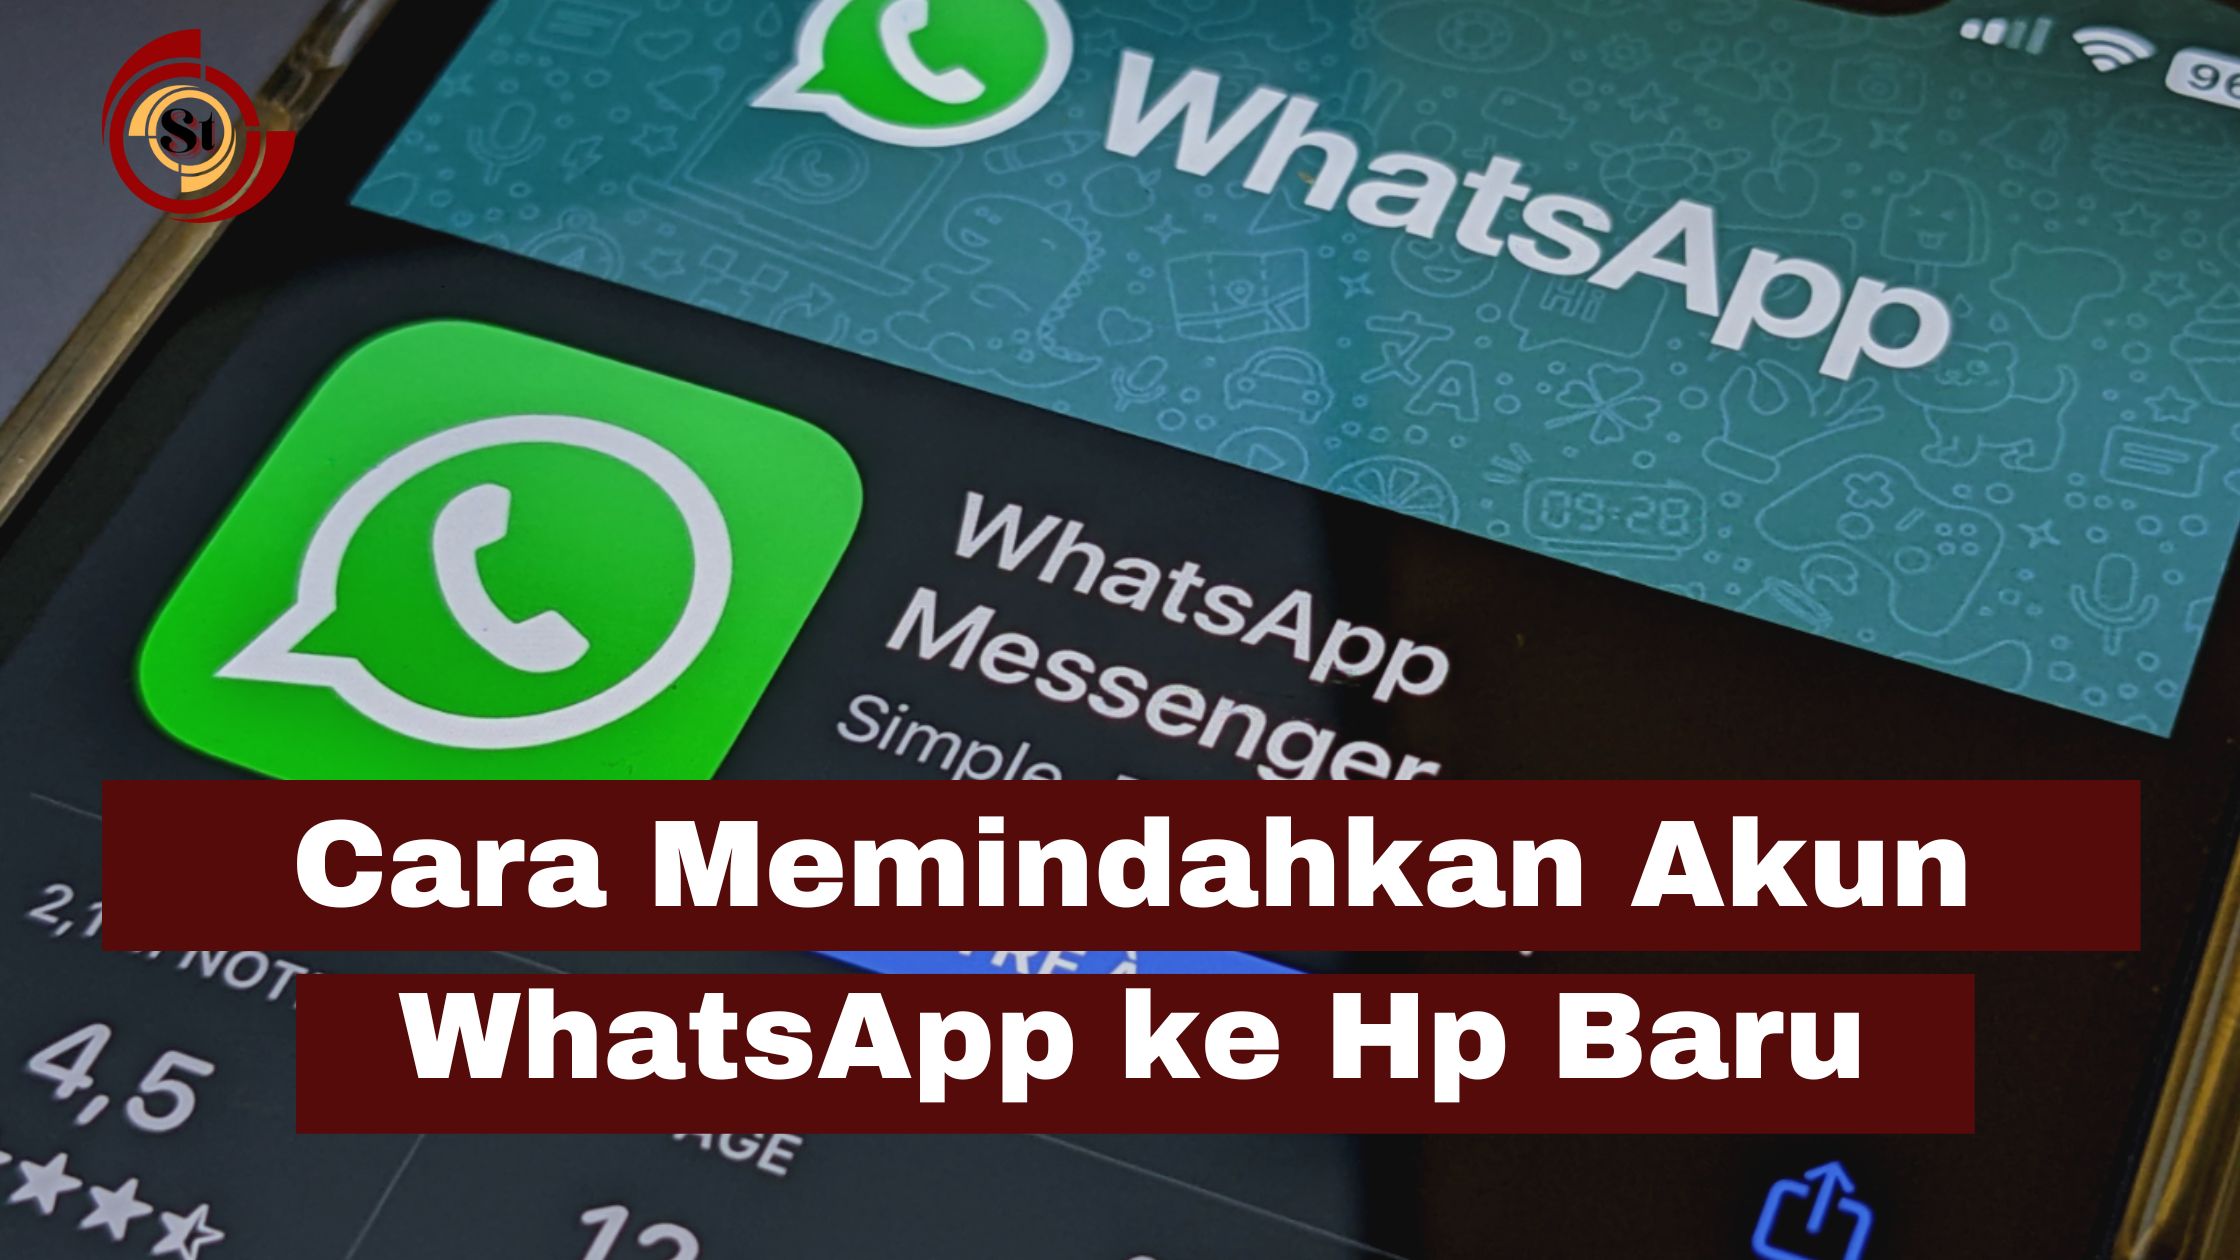 Cara Memindahkan WhatsApp ke Hp Baru